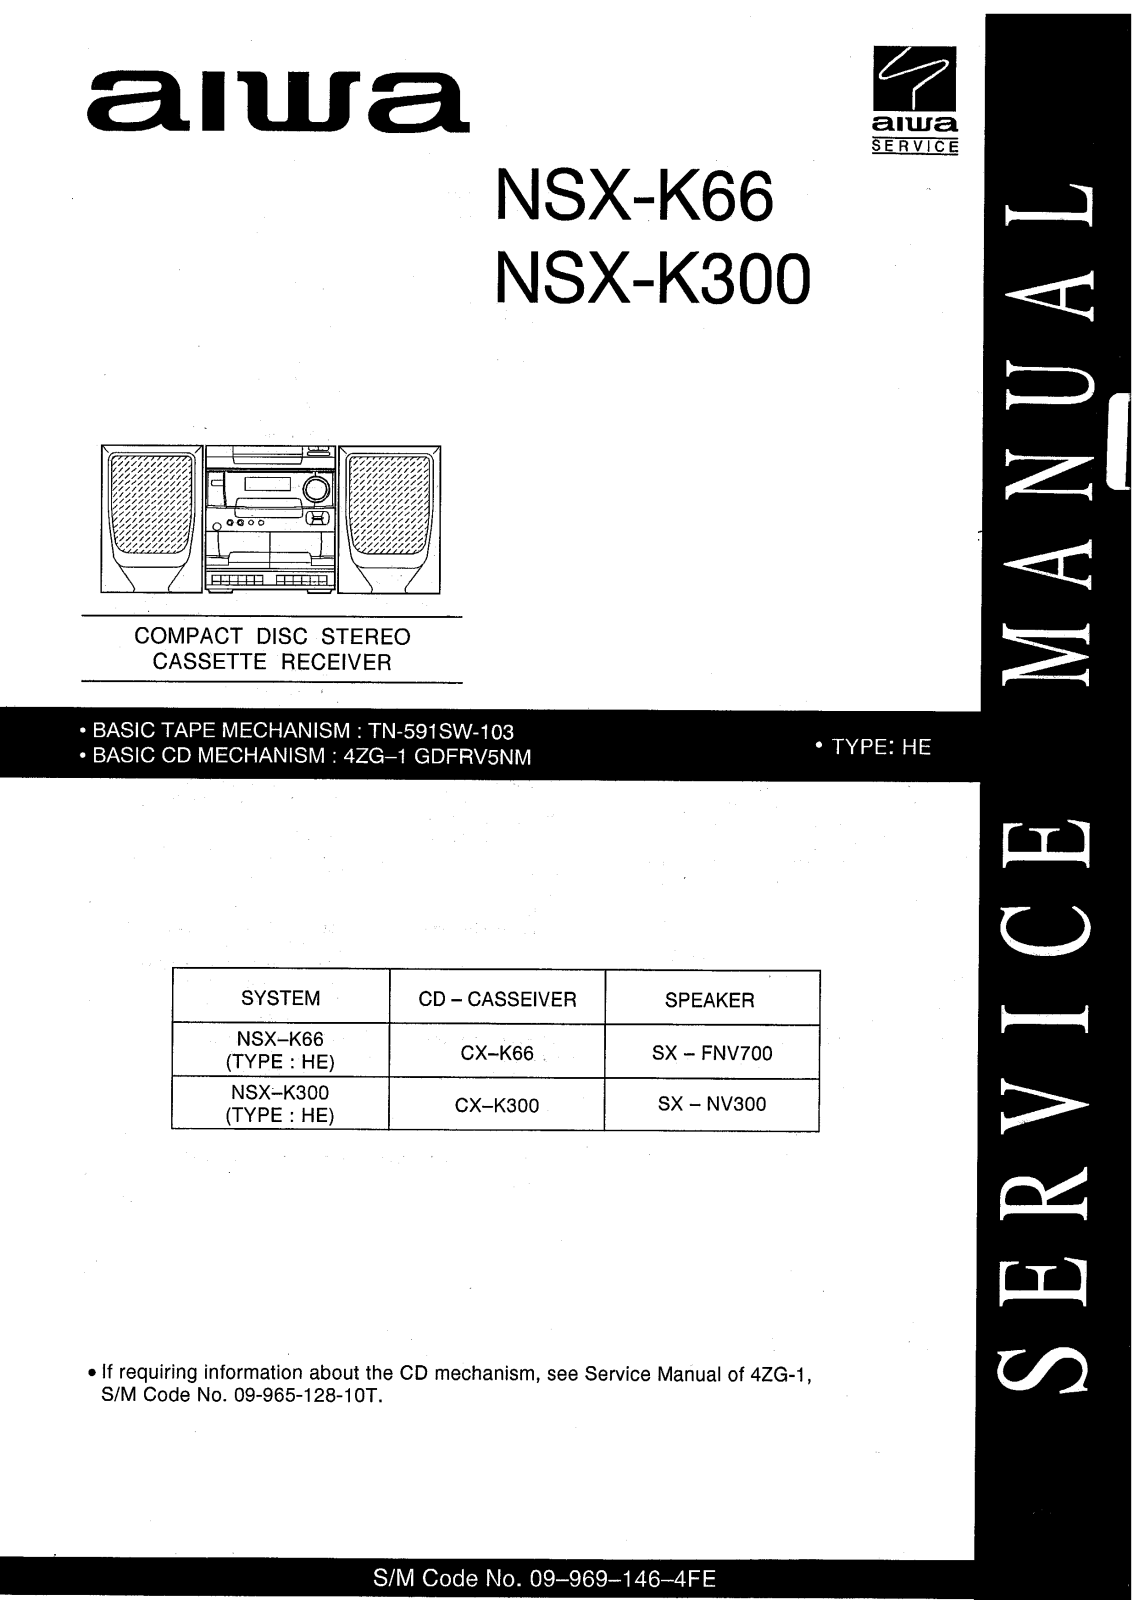 Aiwa NSX-K66, NSX-K300 User Manual